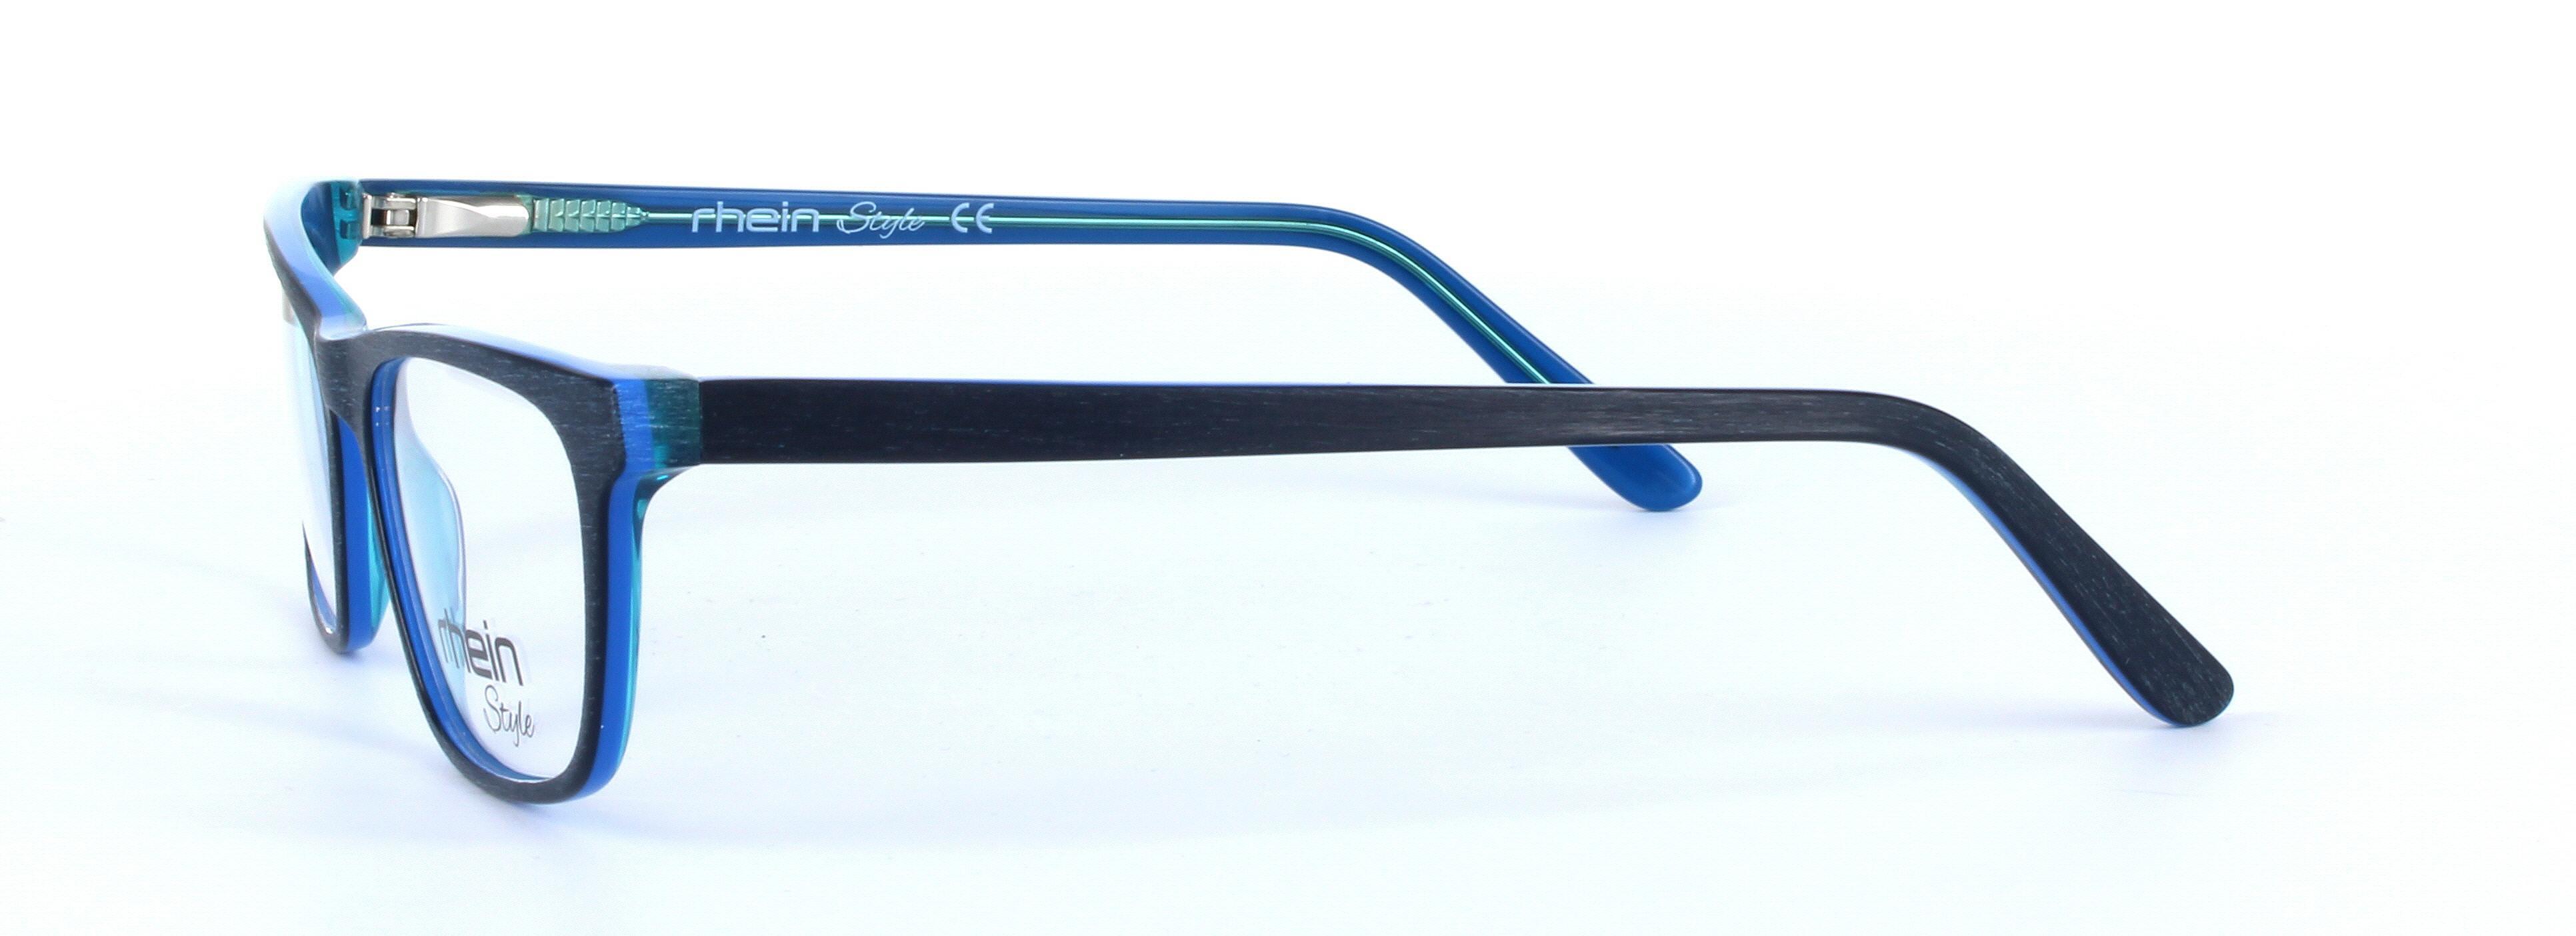 Filbert Blue Full Rim Oval Rectangular Plastic Glasses - Image View 2